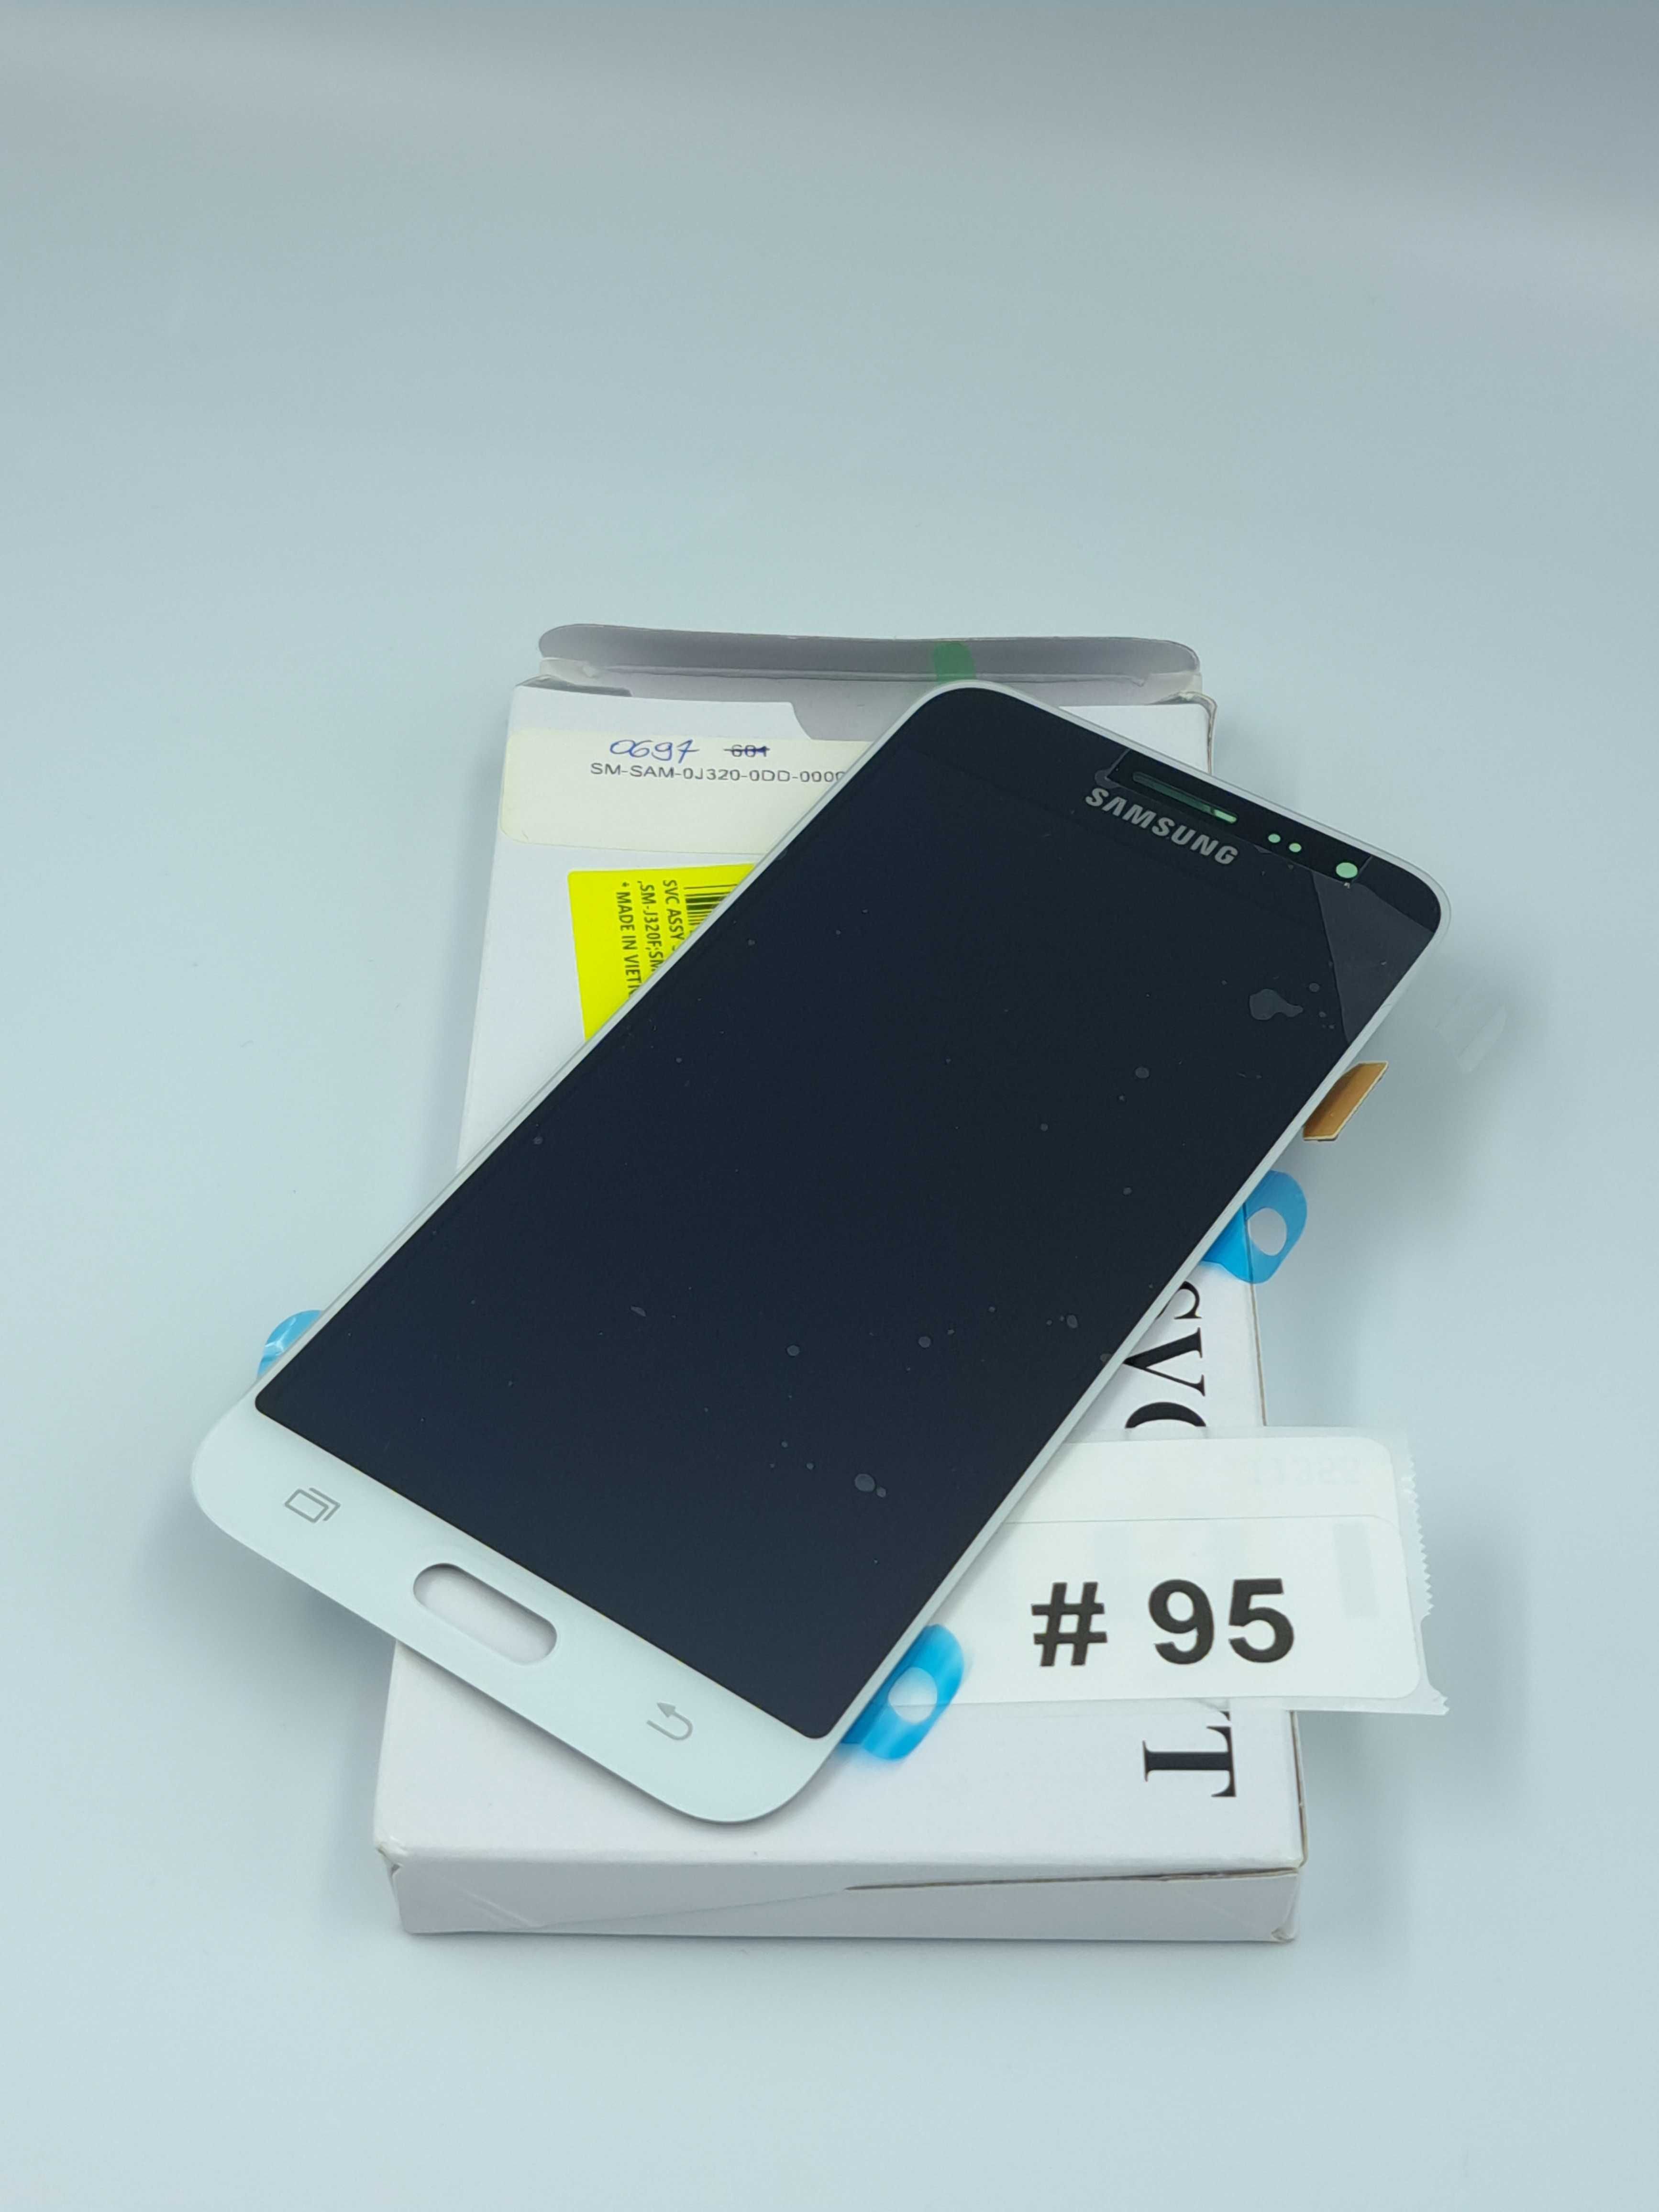 Nowy Oryginalny Wyświetlacz Samsung Galaxy J3 2016 J320 Biały #95